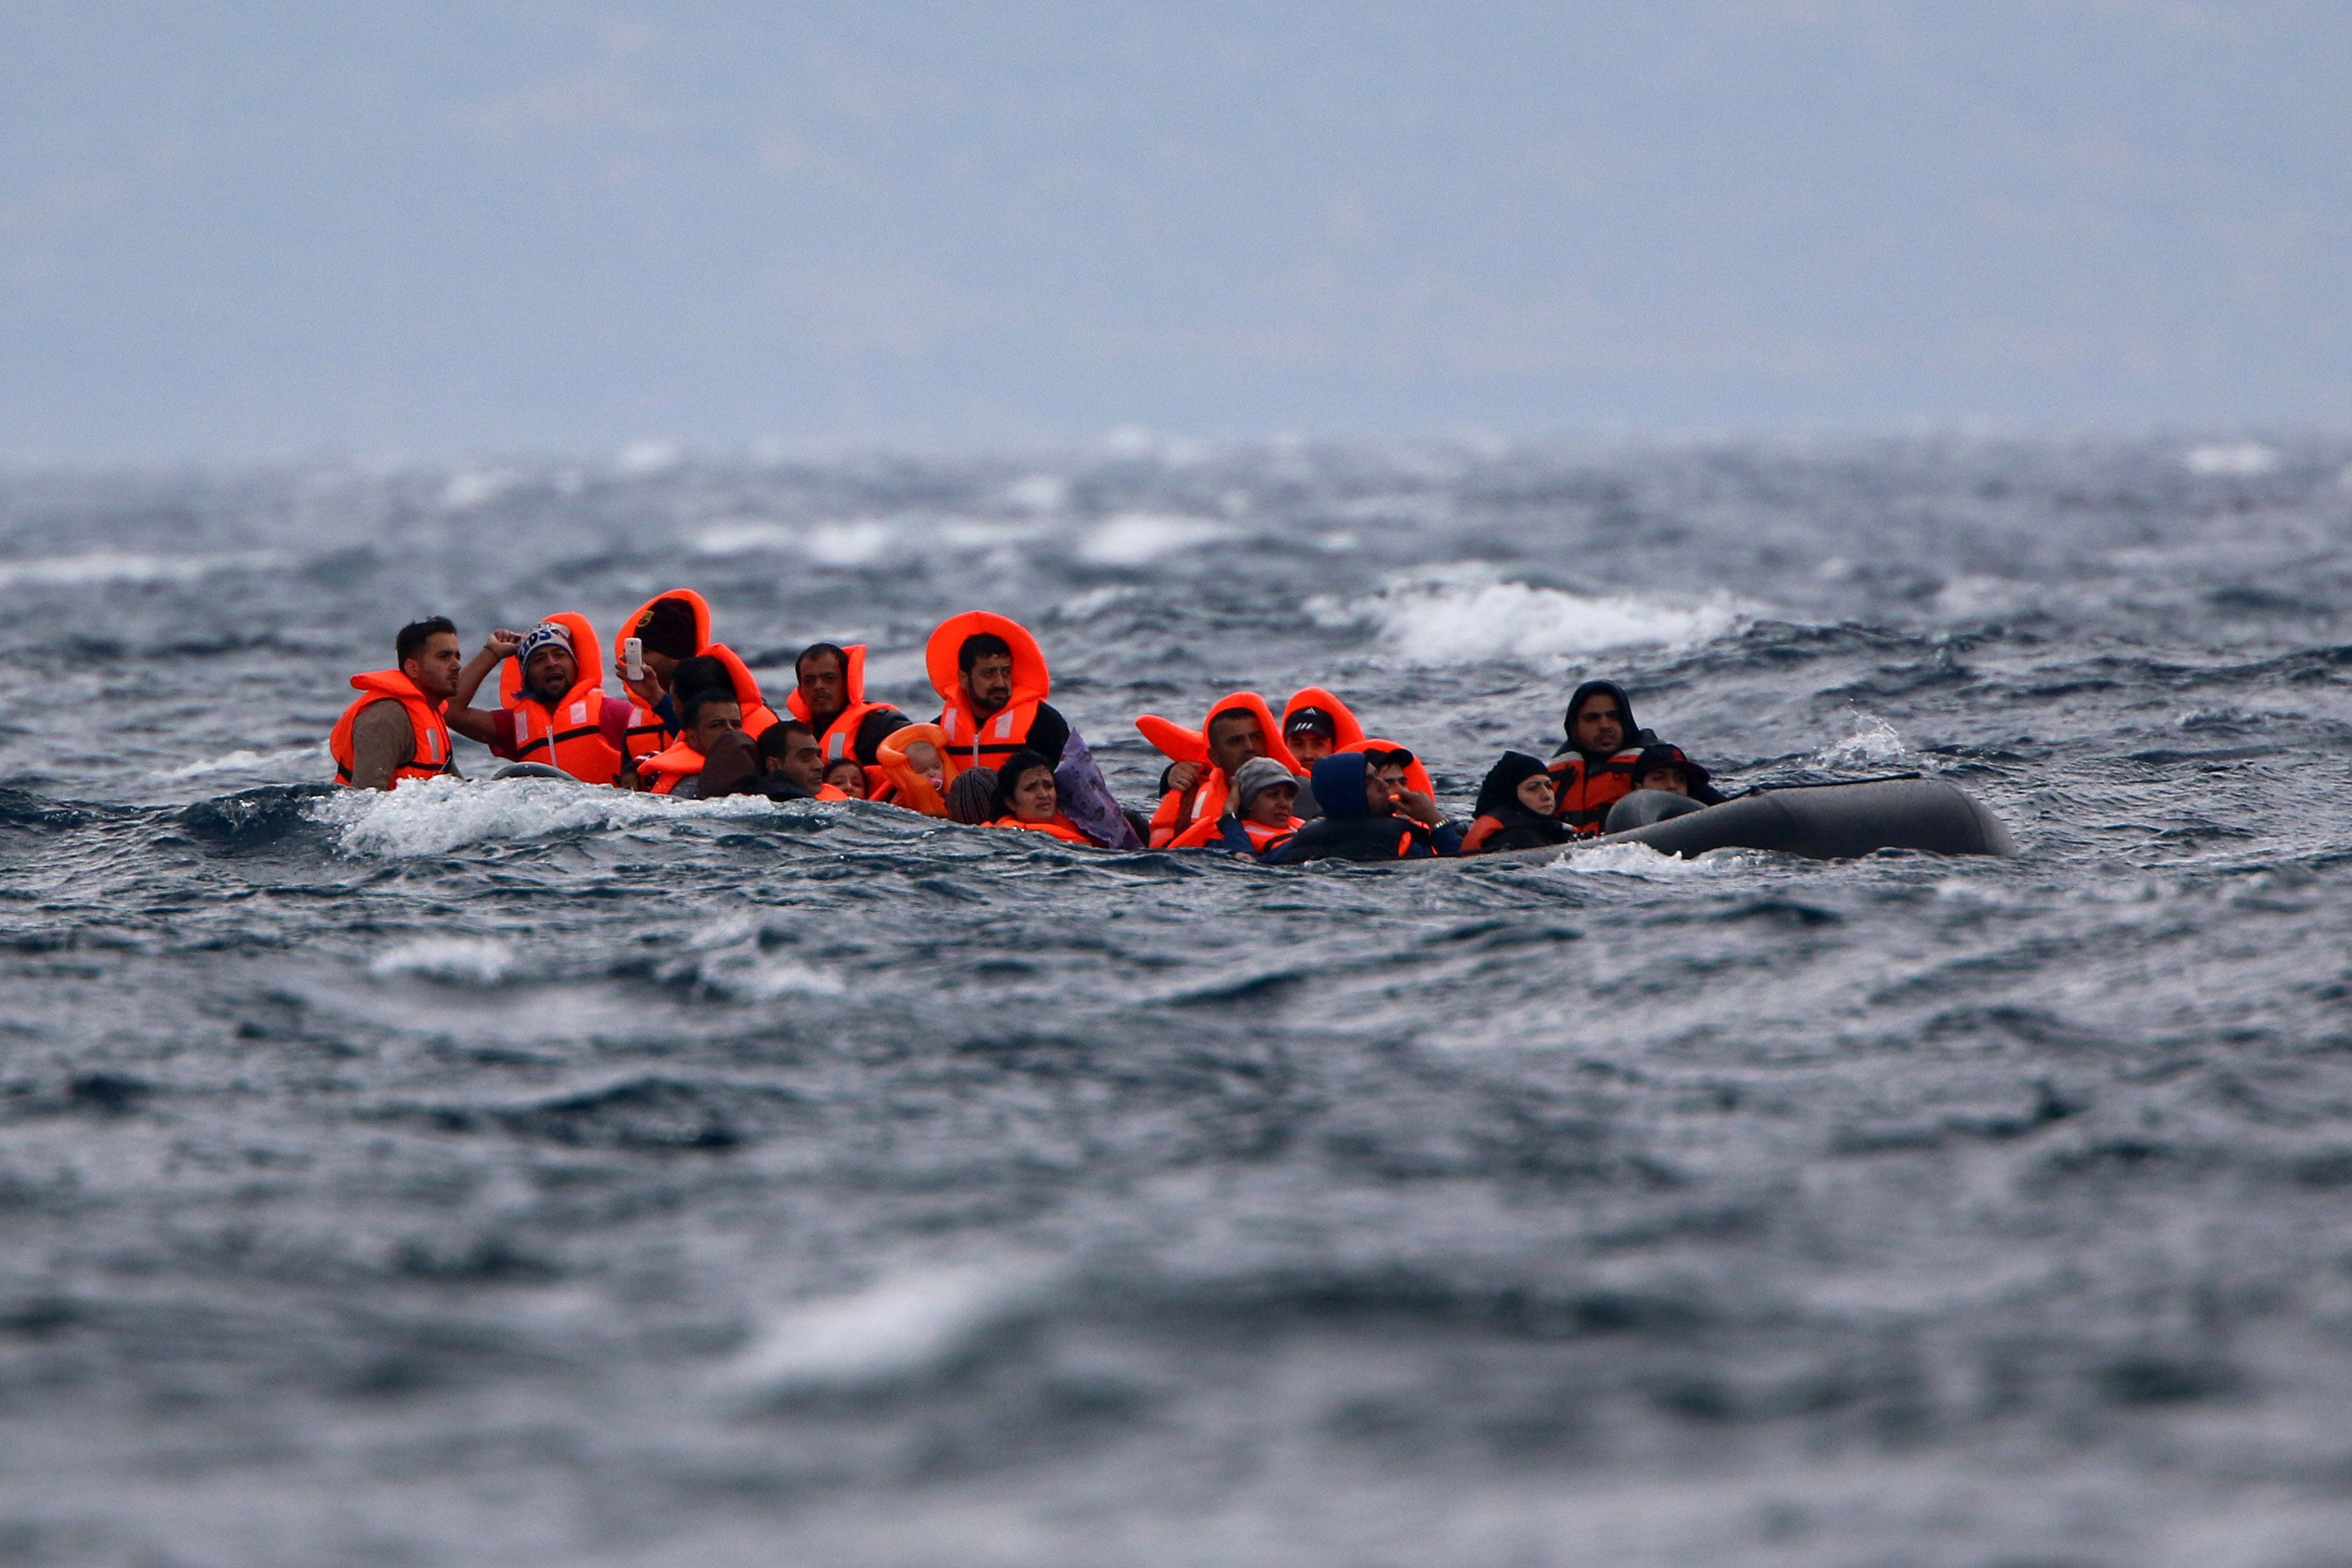 Πρόσφυγες φτάνουν με φουσκοτό σκάφος σε ακτή κοντά στην Εφταλού, την Κυριακή 11 Οκτωβρίου 2015, στη Λέσβο.  Αδίστακτος 34χρονος τούρκος διακινητής μεταναστών και προσφύγων είχε κουβαλήσει στη Λέσβο με το 15μετρο ξύλινο σκάφος του μόλις το περασμένο σαββατοκύριακο περισσότερους από 1000 ανθρώπους. Εισπράττοντας από τον καθέναν περισσότερα από τα 1500 ευρώ. Τελικά χθες το απόγευμα συνελήφθη από στελέχη του Λιμενικού Σώματος που περιπολούσαν στην περιοχή μαζί με στελέχη της FRONTEX. Σύμφωνα με πληροφορίες το δουλεμπορικό αυτό σκάφος, κινούμενο στη διαδρομή από τα απέναντι Μικρασιατικά παράλια και συγκεκριμένα την περιοχή Μπεχράμ Καλά στην Εφταλού της Λέσβου,  είχε μπει στο στόχαστρο των διωκτικών αρχών. Εντοπίστηκε και τέθηκε υπό παρακολούθηση. Τον άφησαν πρώτα να αποβιβάσει τους φυγάδες από τα απέναντι παράλια, προκειμένου κατά τη διάρκεια της επιχείρησης να μην κινδυνέψουν ανθρώπινες ζωές και στη συνέχεια τον καταδίωξαν και τον συνέλαβαν. Ο φωτογραφικός φακός του Πέτρου Τσακμάκη είχε αποθανατίσει το σκάφος αυτό το περασμένο Σαββατοκύριακο σε ένα από τα ταξίδια τους κι ενώ αποβίβαζε π